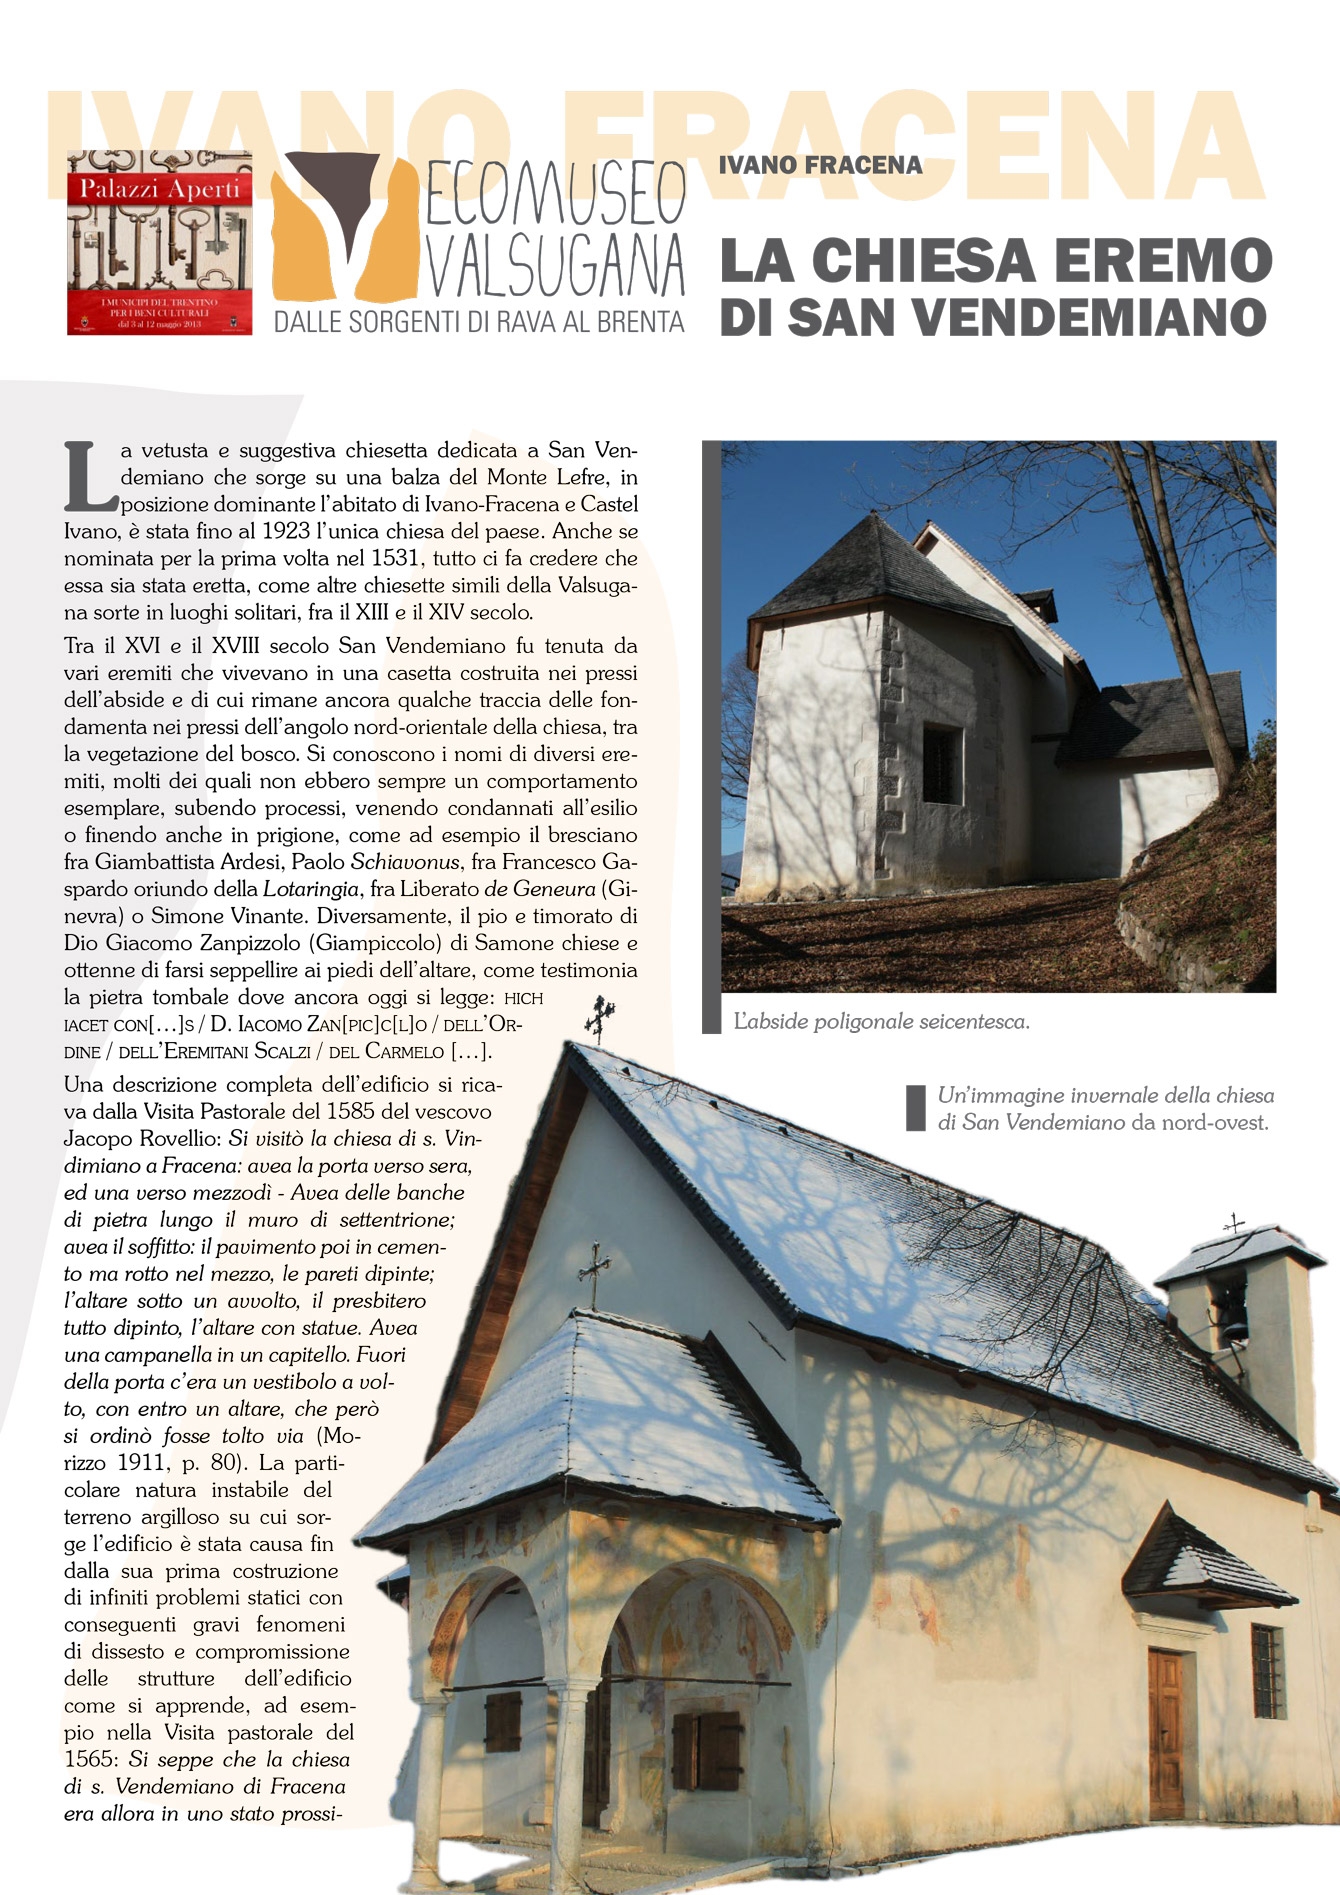 Ivano Fracena: la chiesa eremo di San Vendemiano